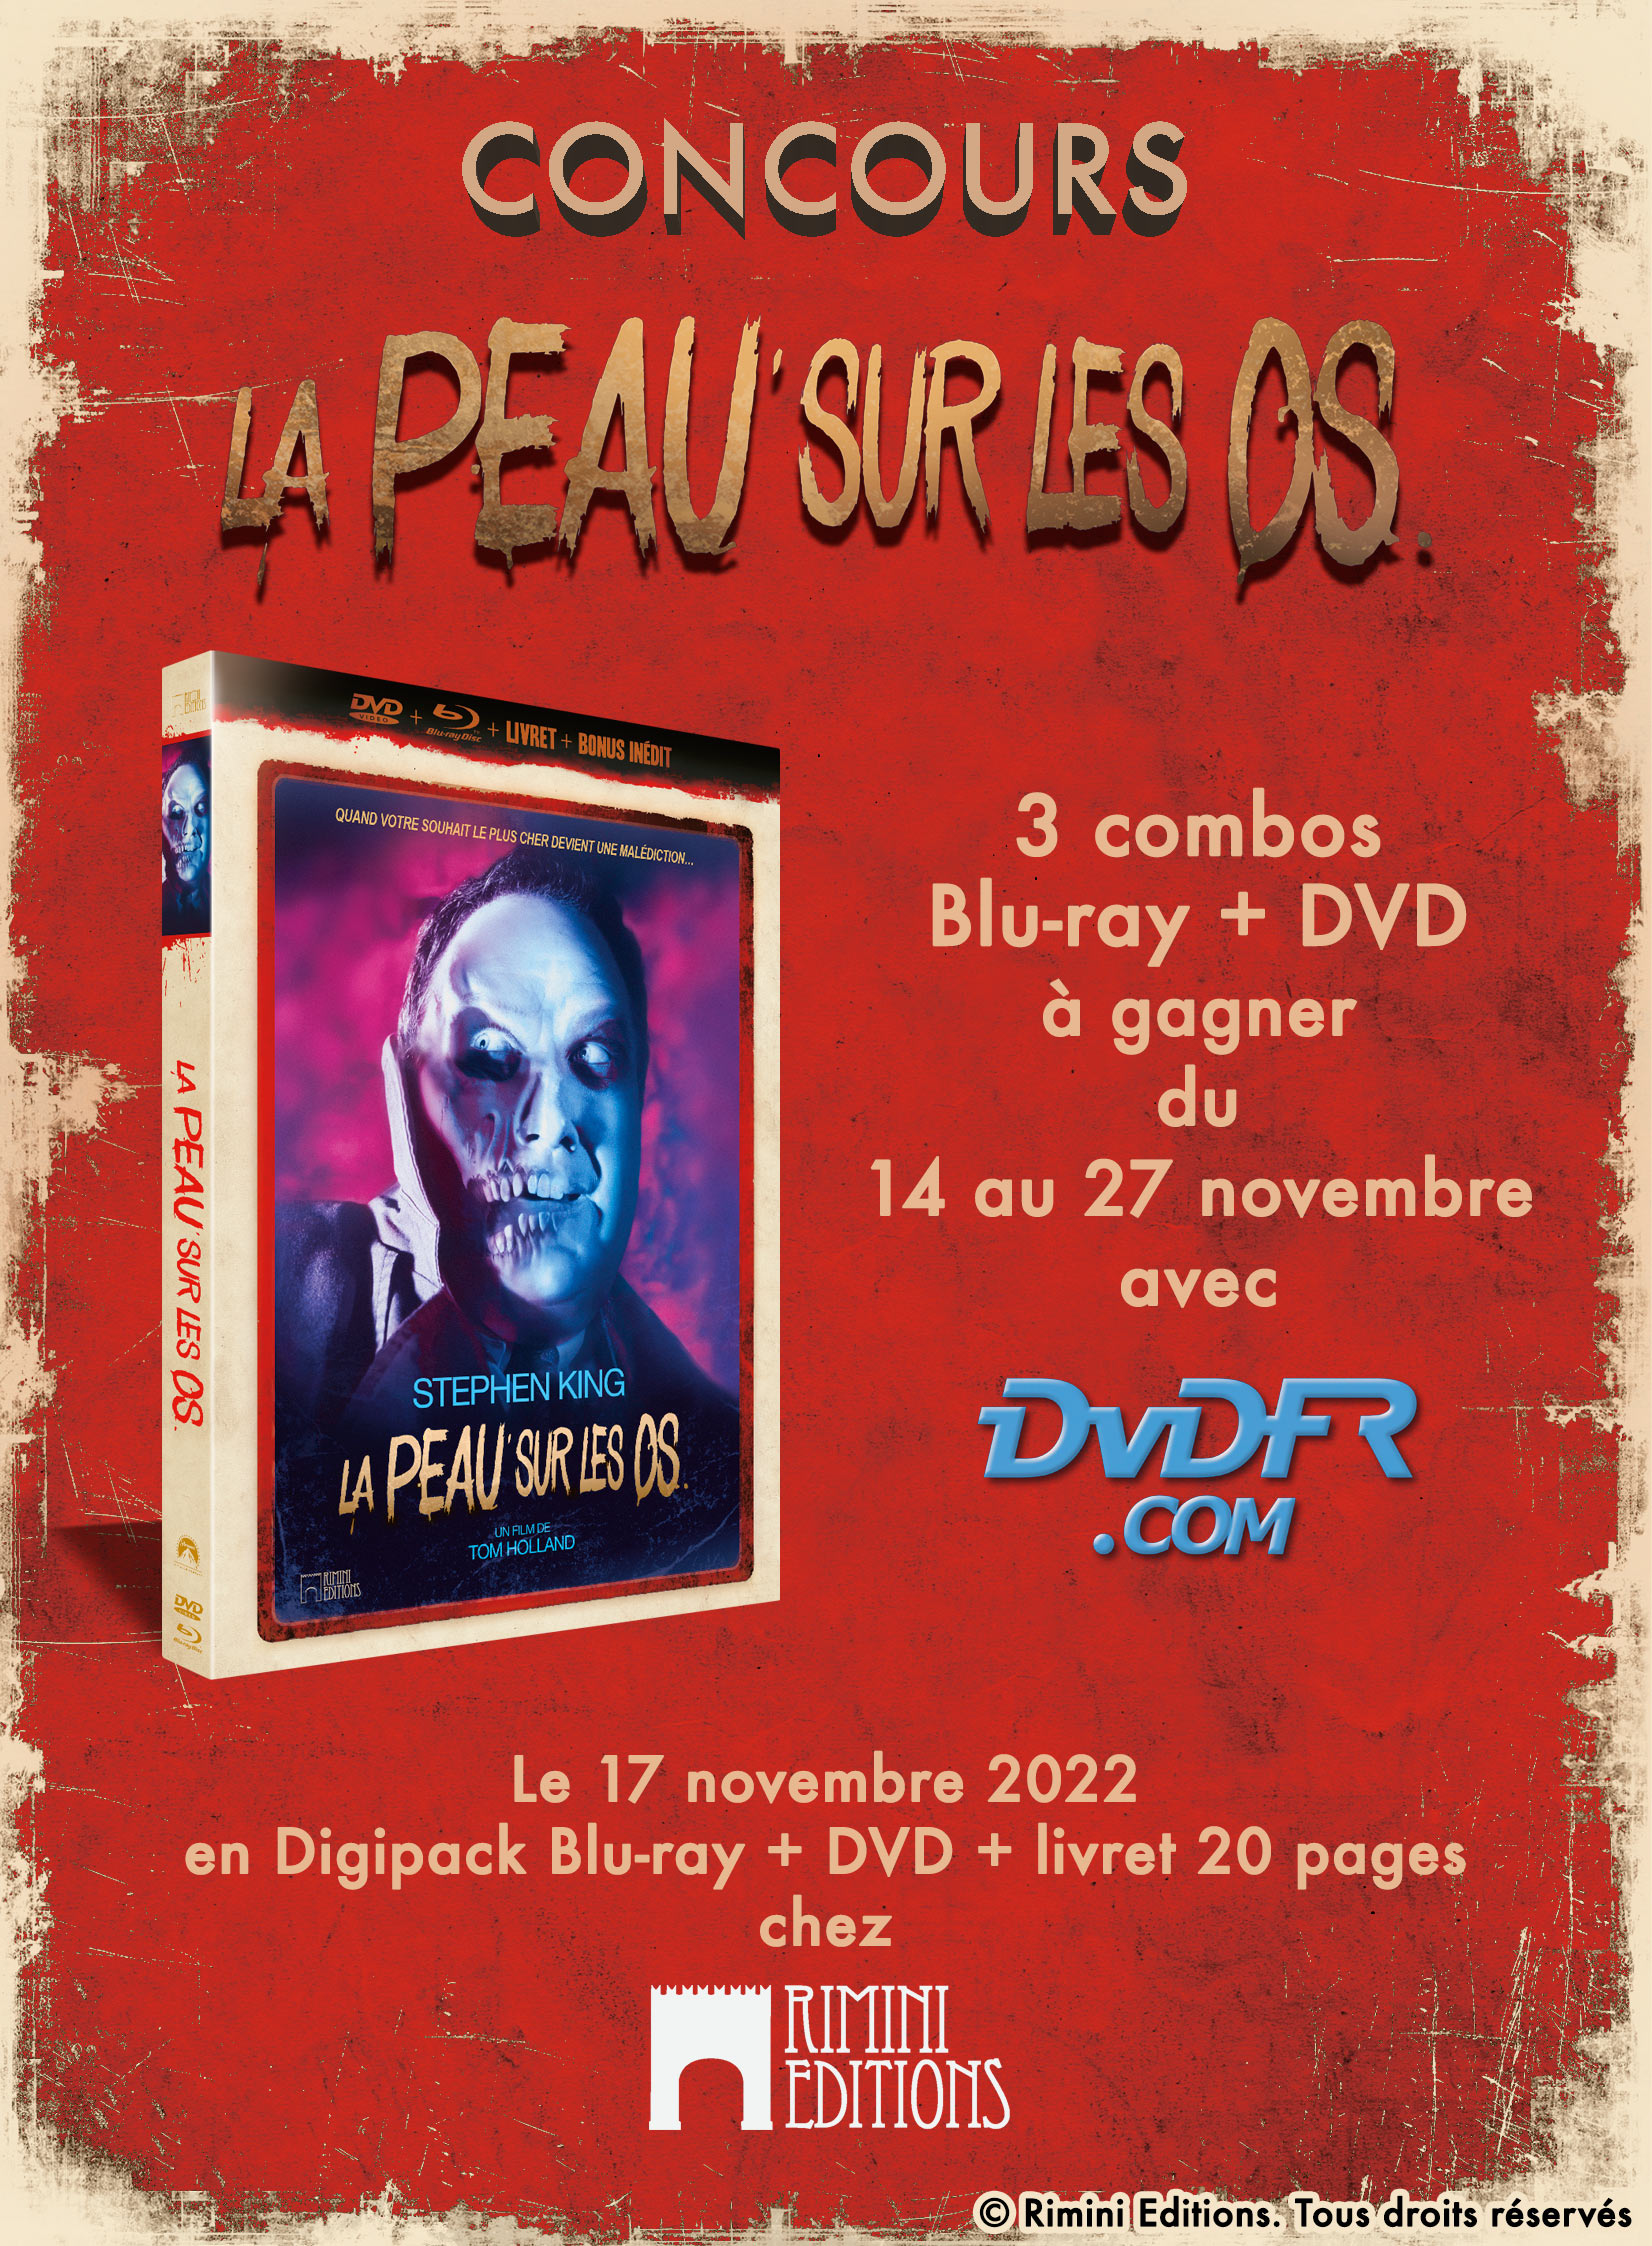 Concours - La Peau sur les os - Blu-ray + DVD + Livret - Rimini Editions